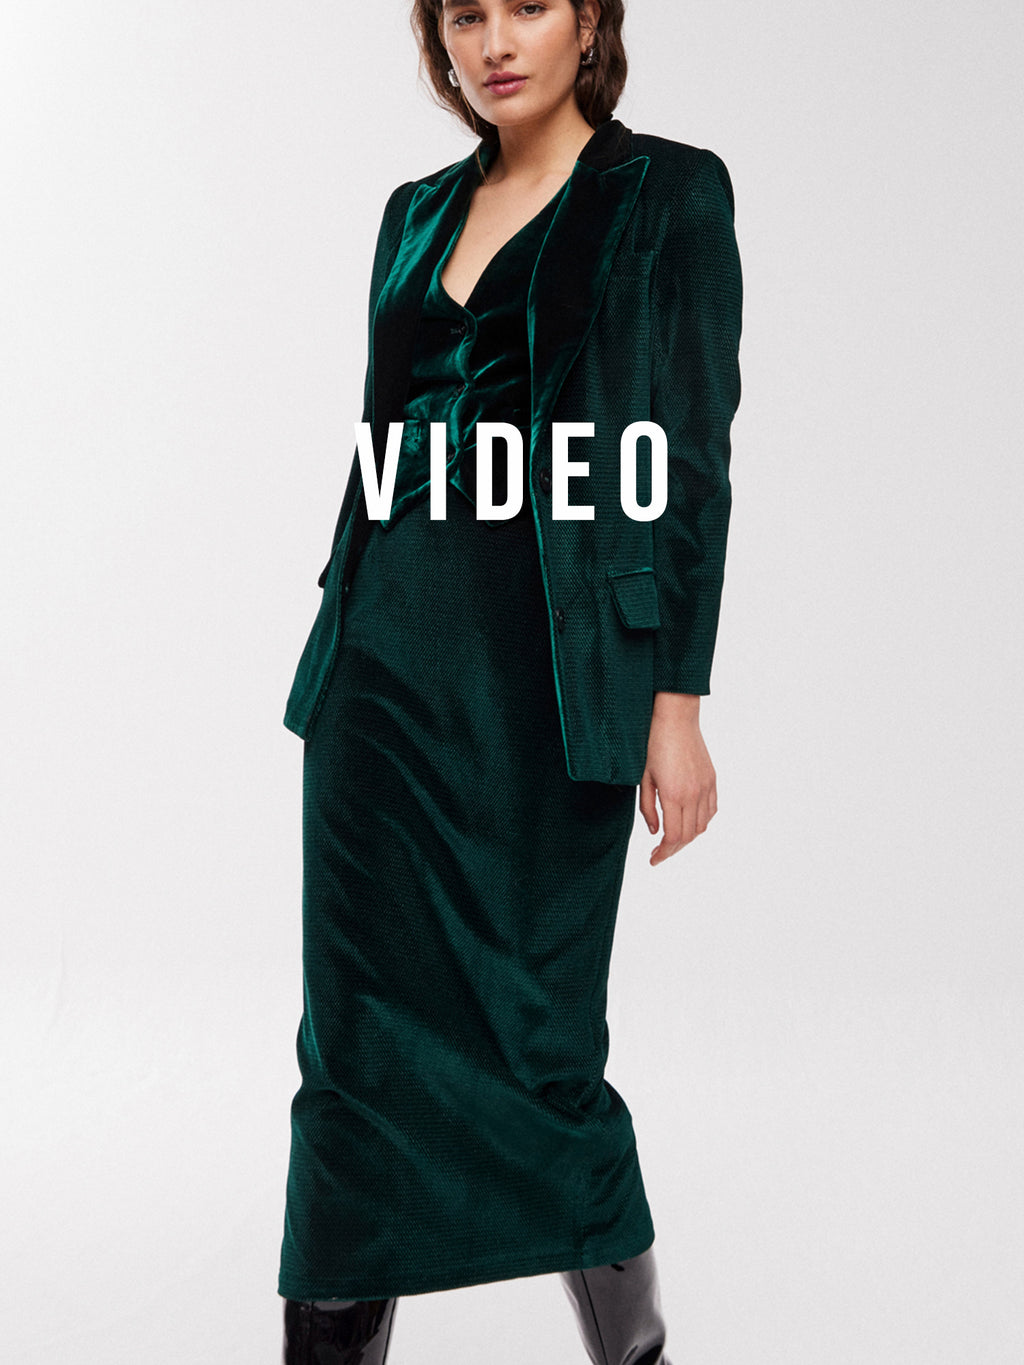 mioh | DOUGLAS GREEN - Traje falda terciopelo verde invitada, fiesta y diario. Pura tendencia vogue FW23. MIOH marca española moda famosas instagramers